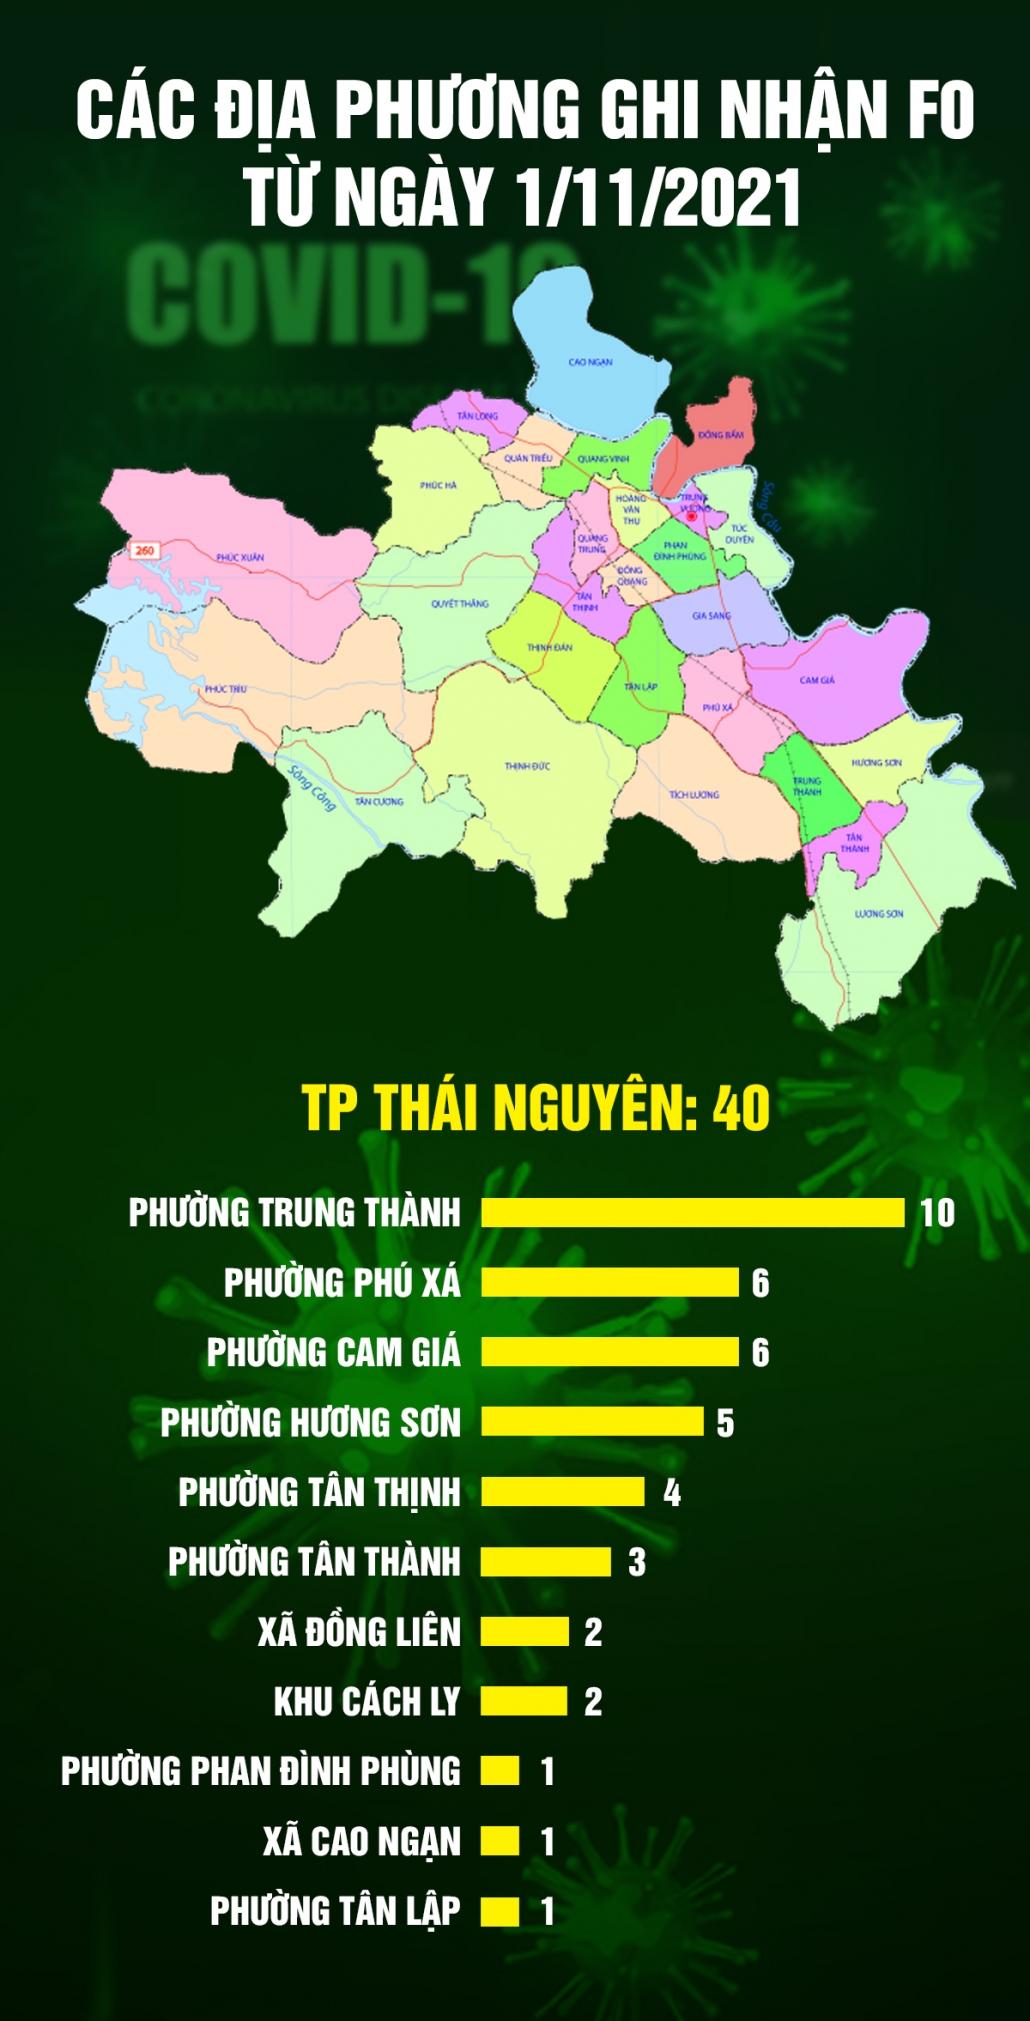 [Infographic] Tình hình dịch COVID-19 tại Thái Nguyên (tính đến ngày 8/11/2021)